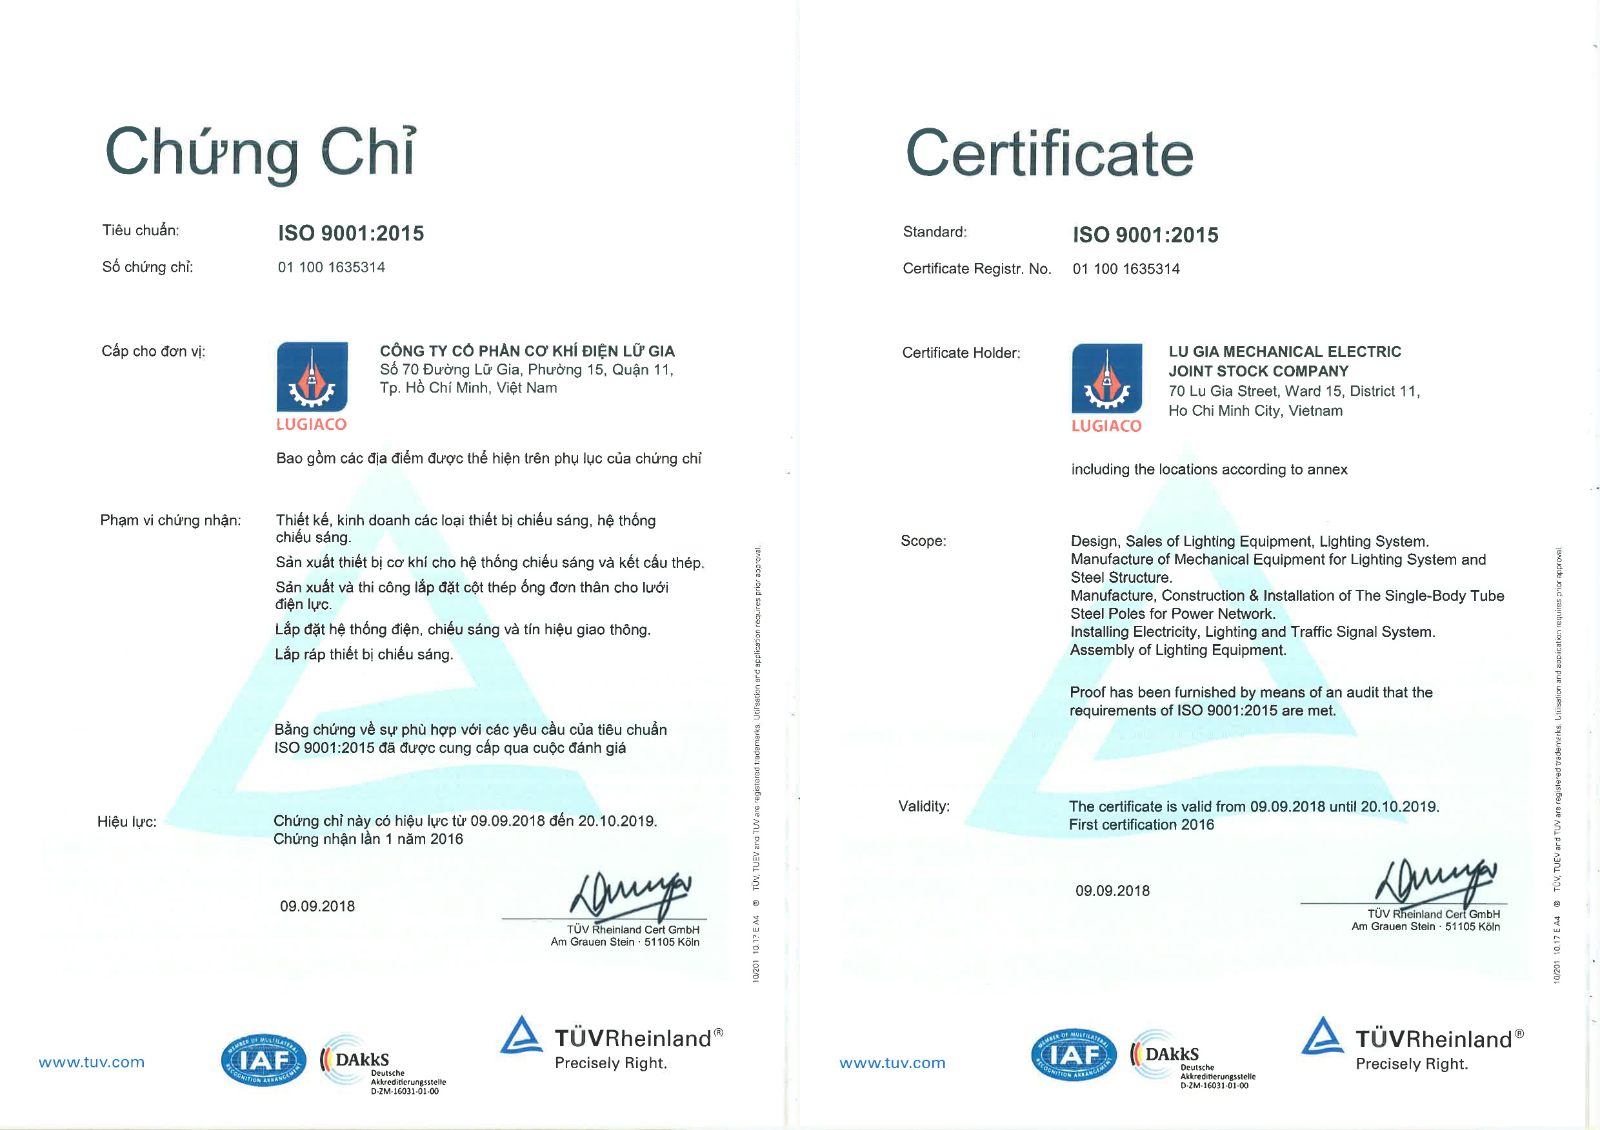 Chung chi ISO 9001 2015